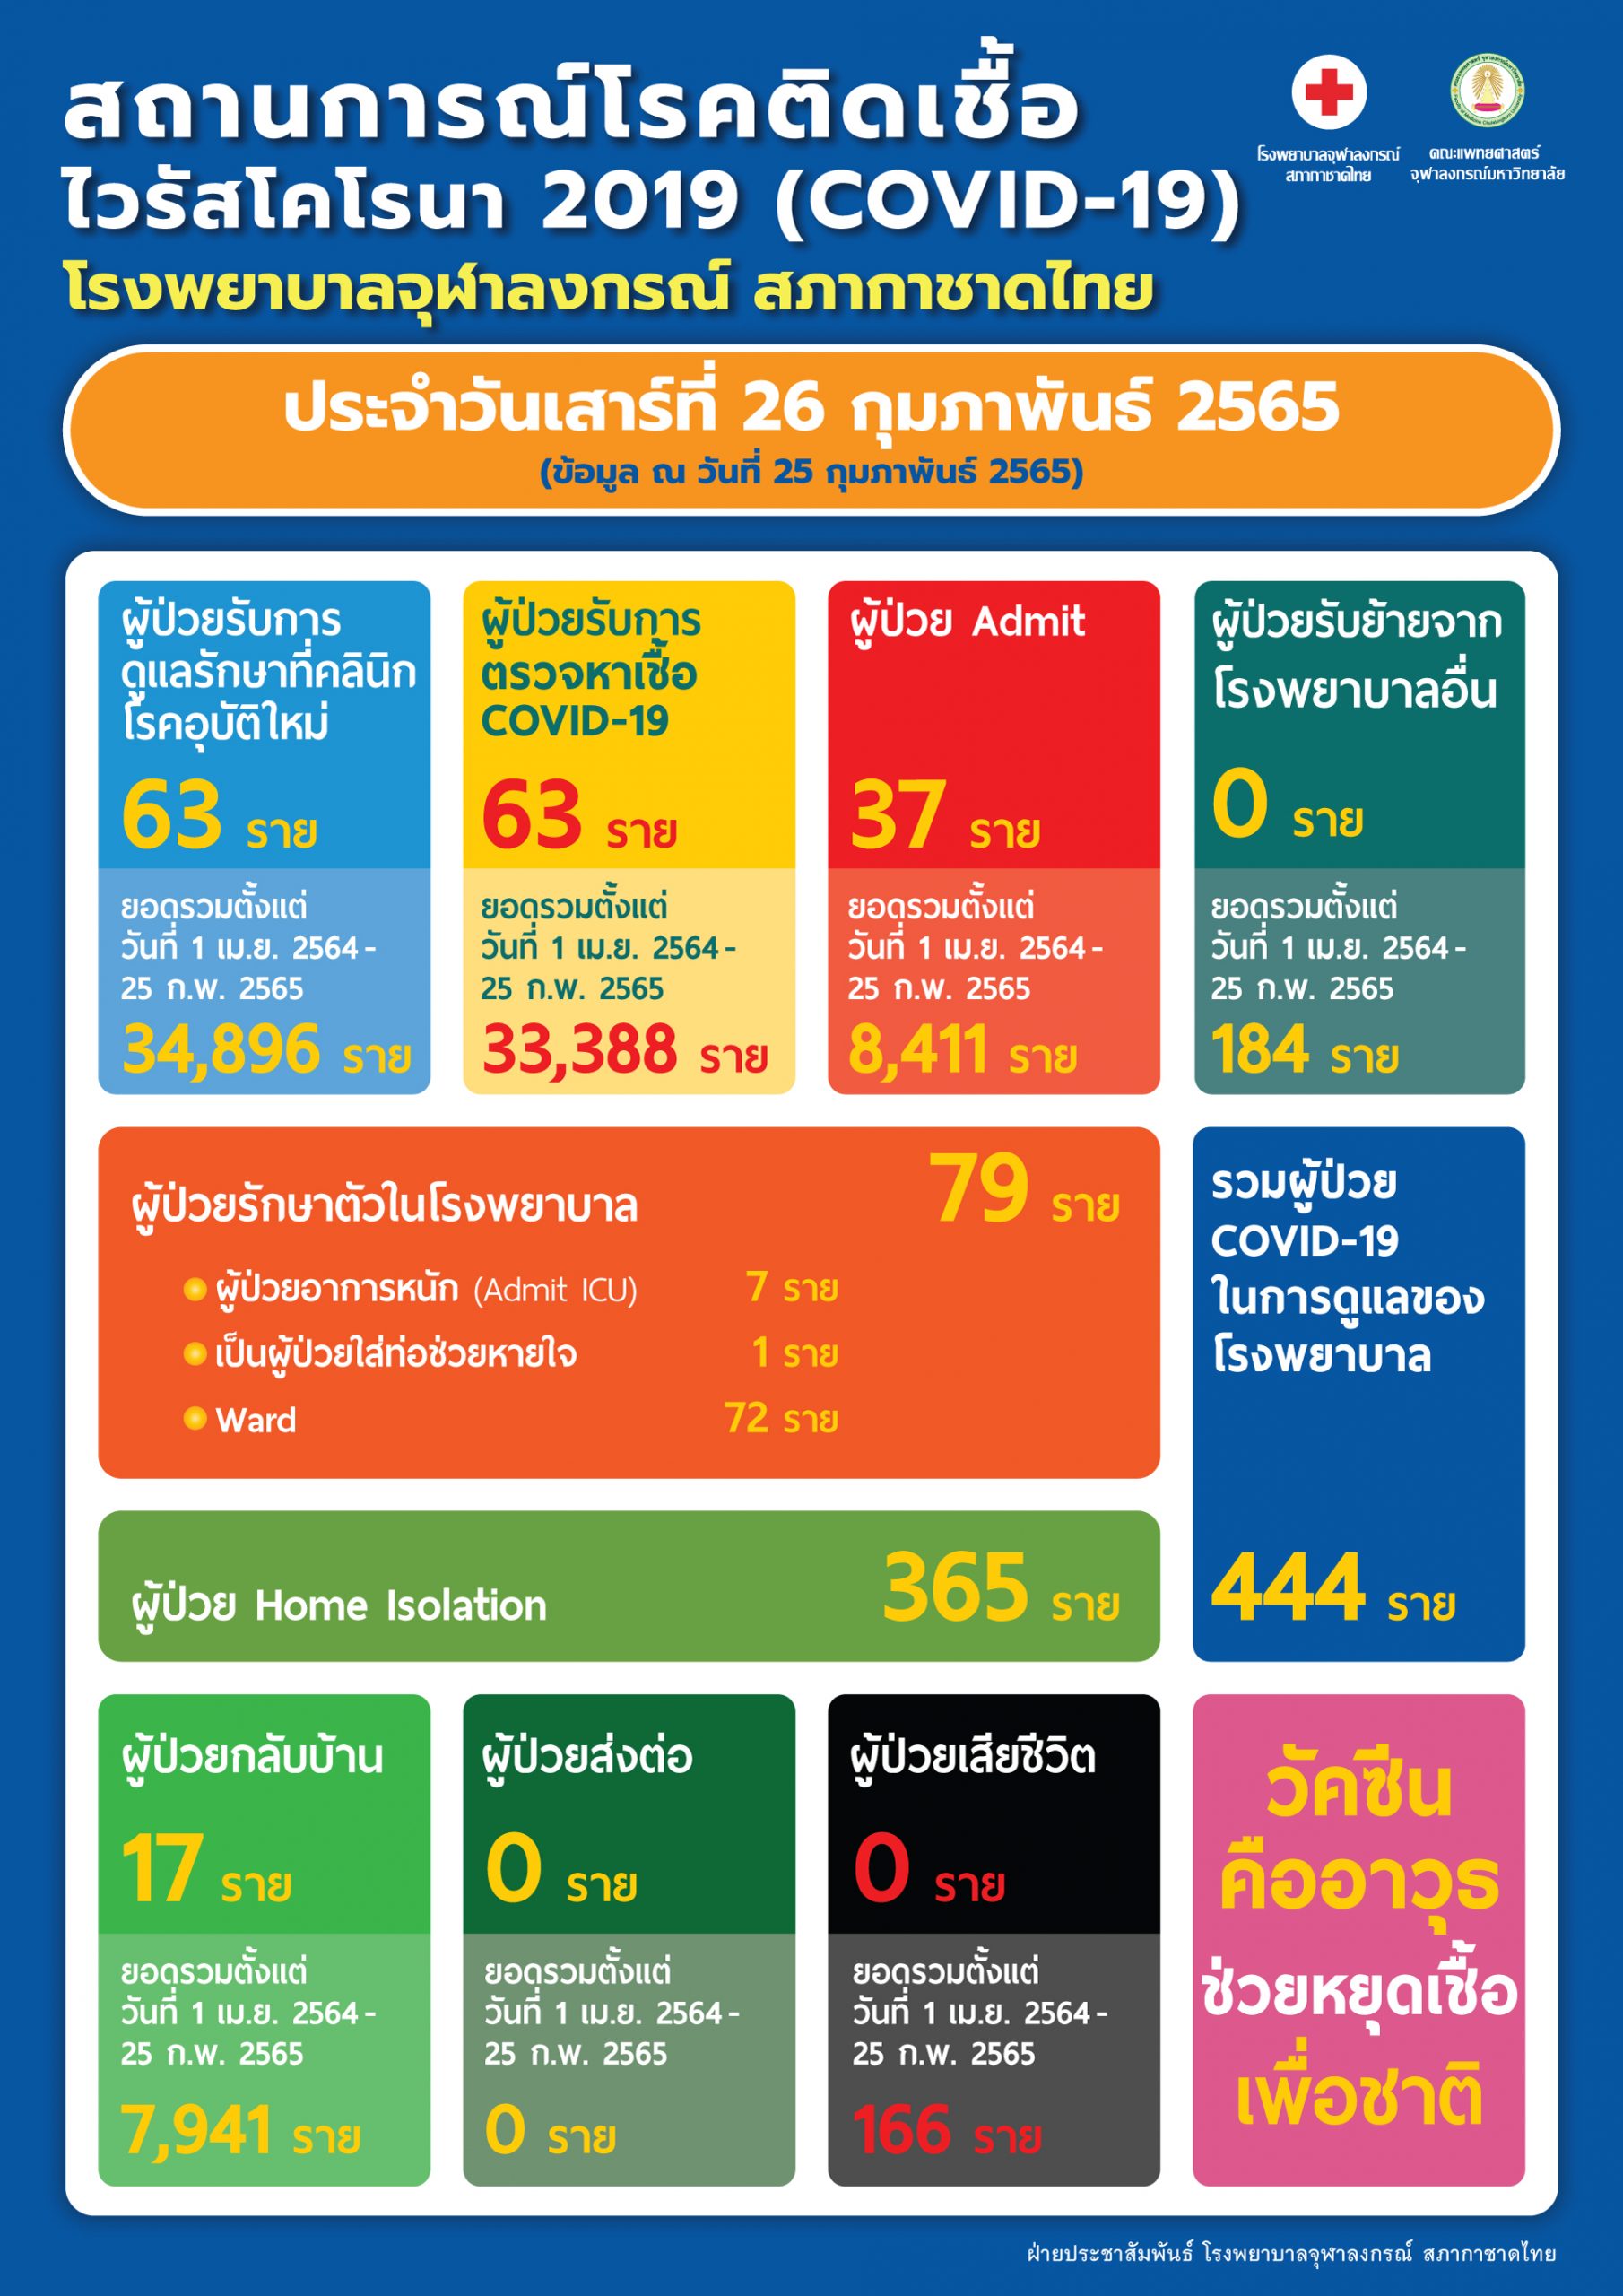 สถานการณ์โรคติดเชื้อไวรัสโคโรนา 2019 (COVID-19) โรงพยาบาลจุฬาลงกรณ์ สภากาชาดไทย ประจำวันเสาร์ที่ 26 กุมภาพันธ์ 2565